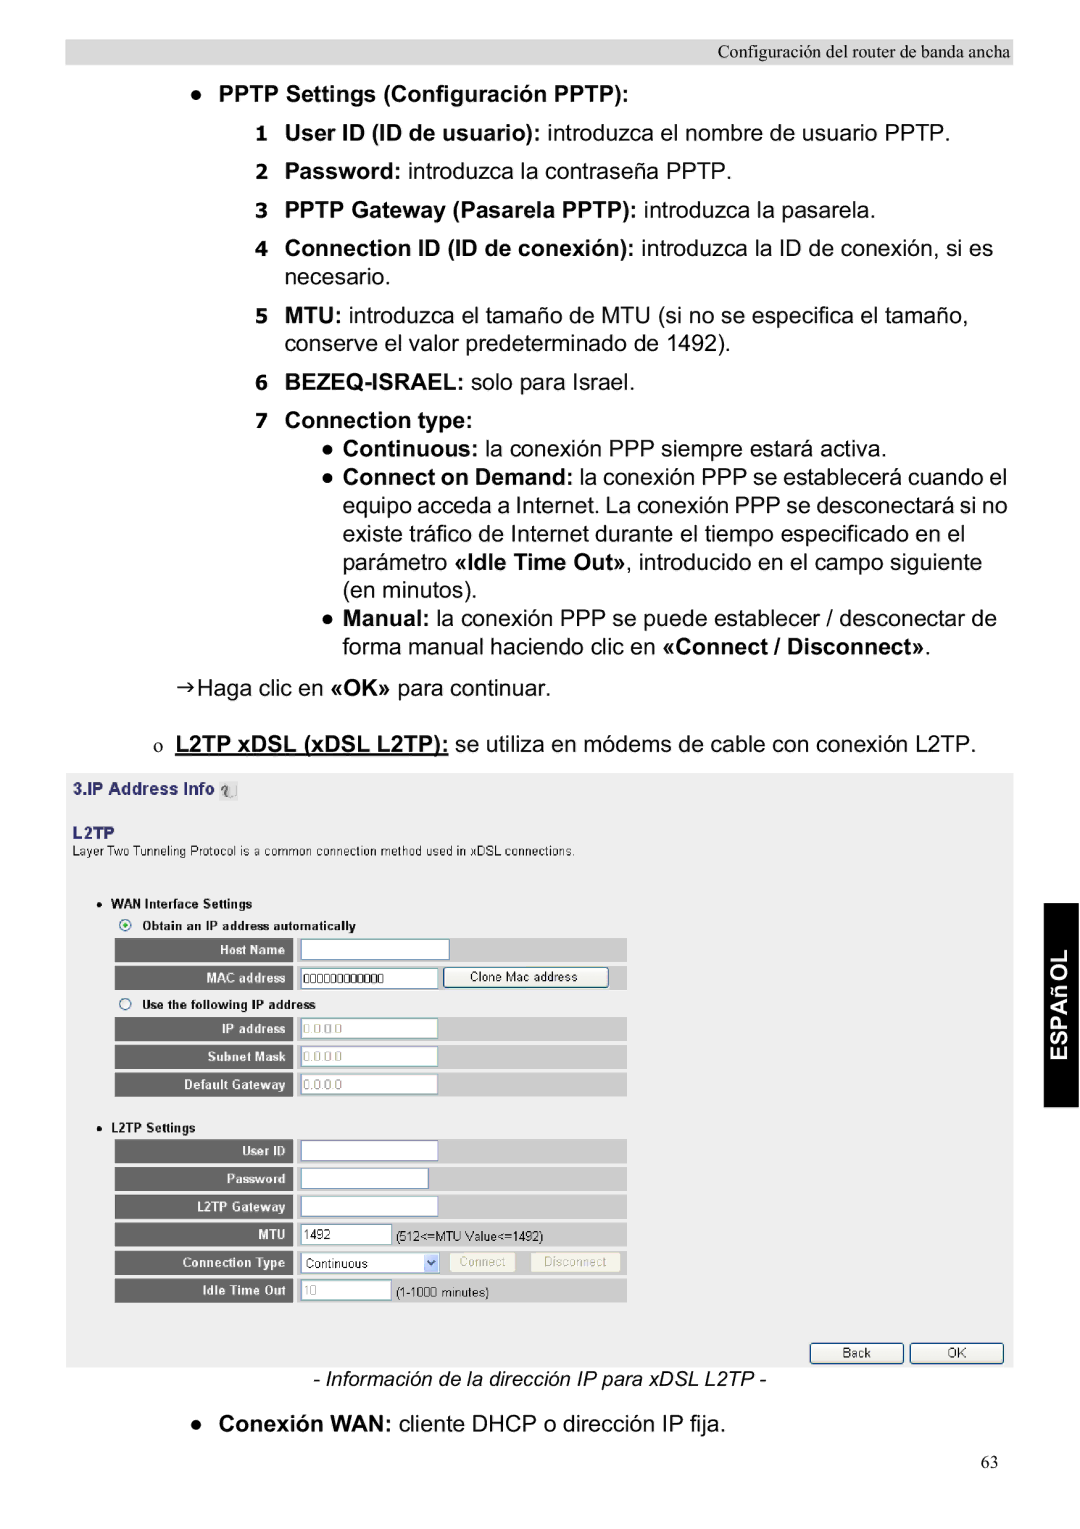 Topcom WBR 7201 N manual Pptp Settings Configuración Pptp, Pptp Gateway Pasarela Pptp introduzca la pasarela 